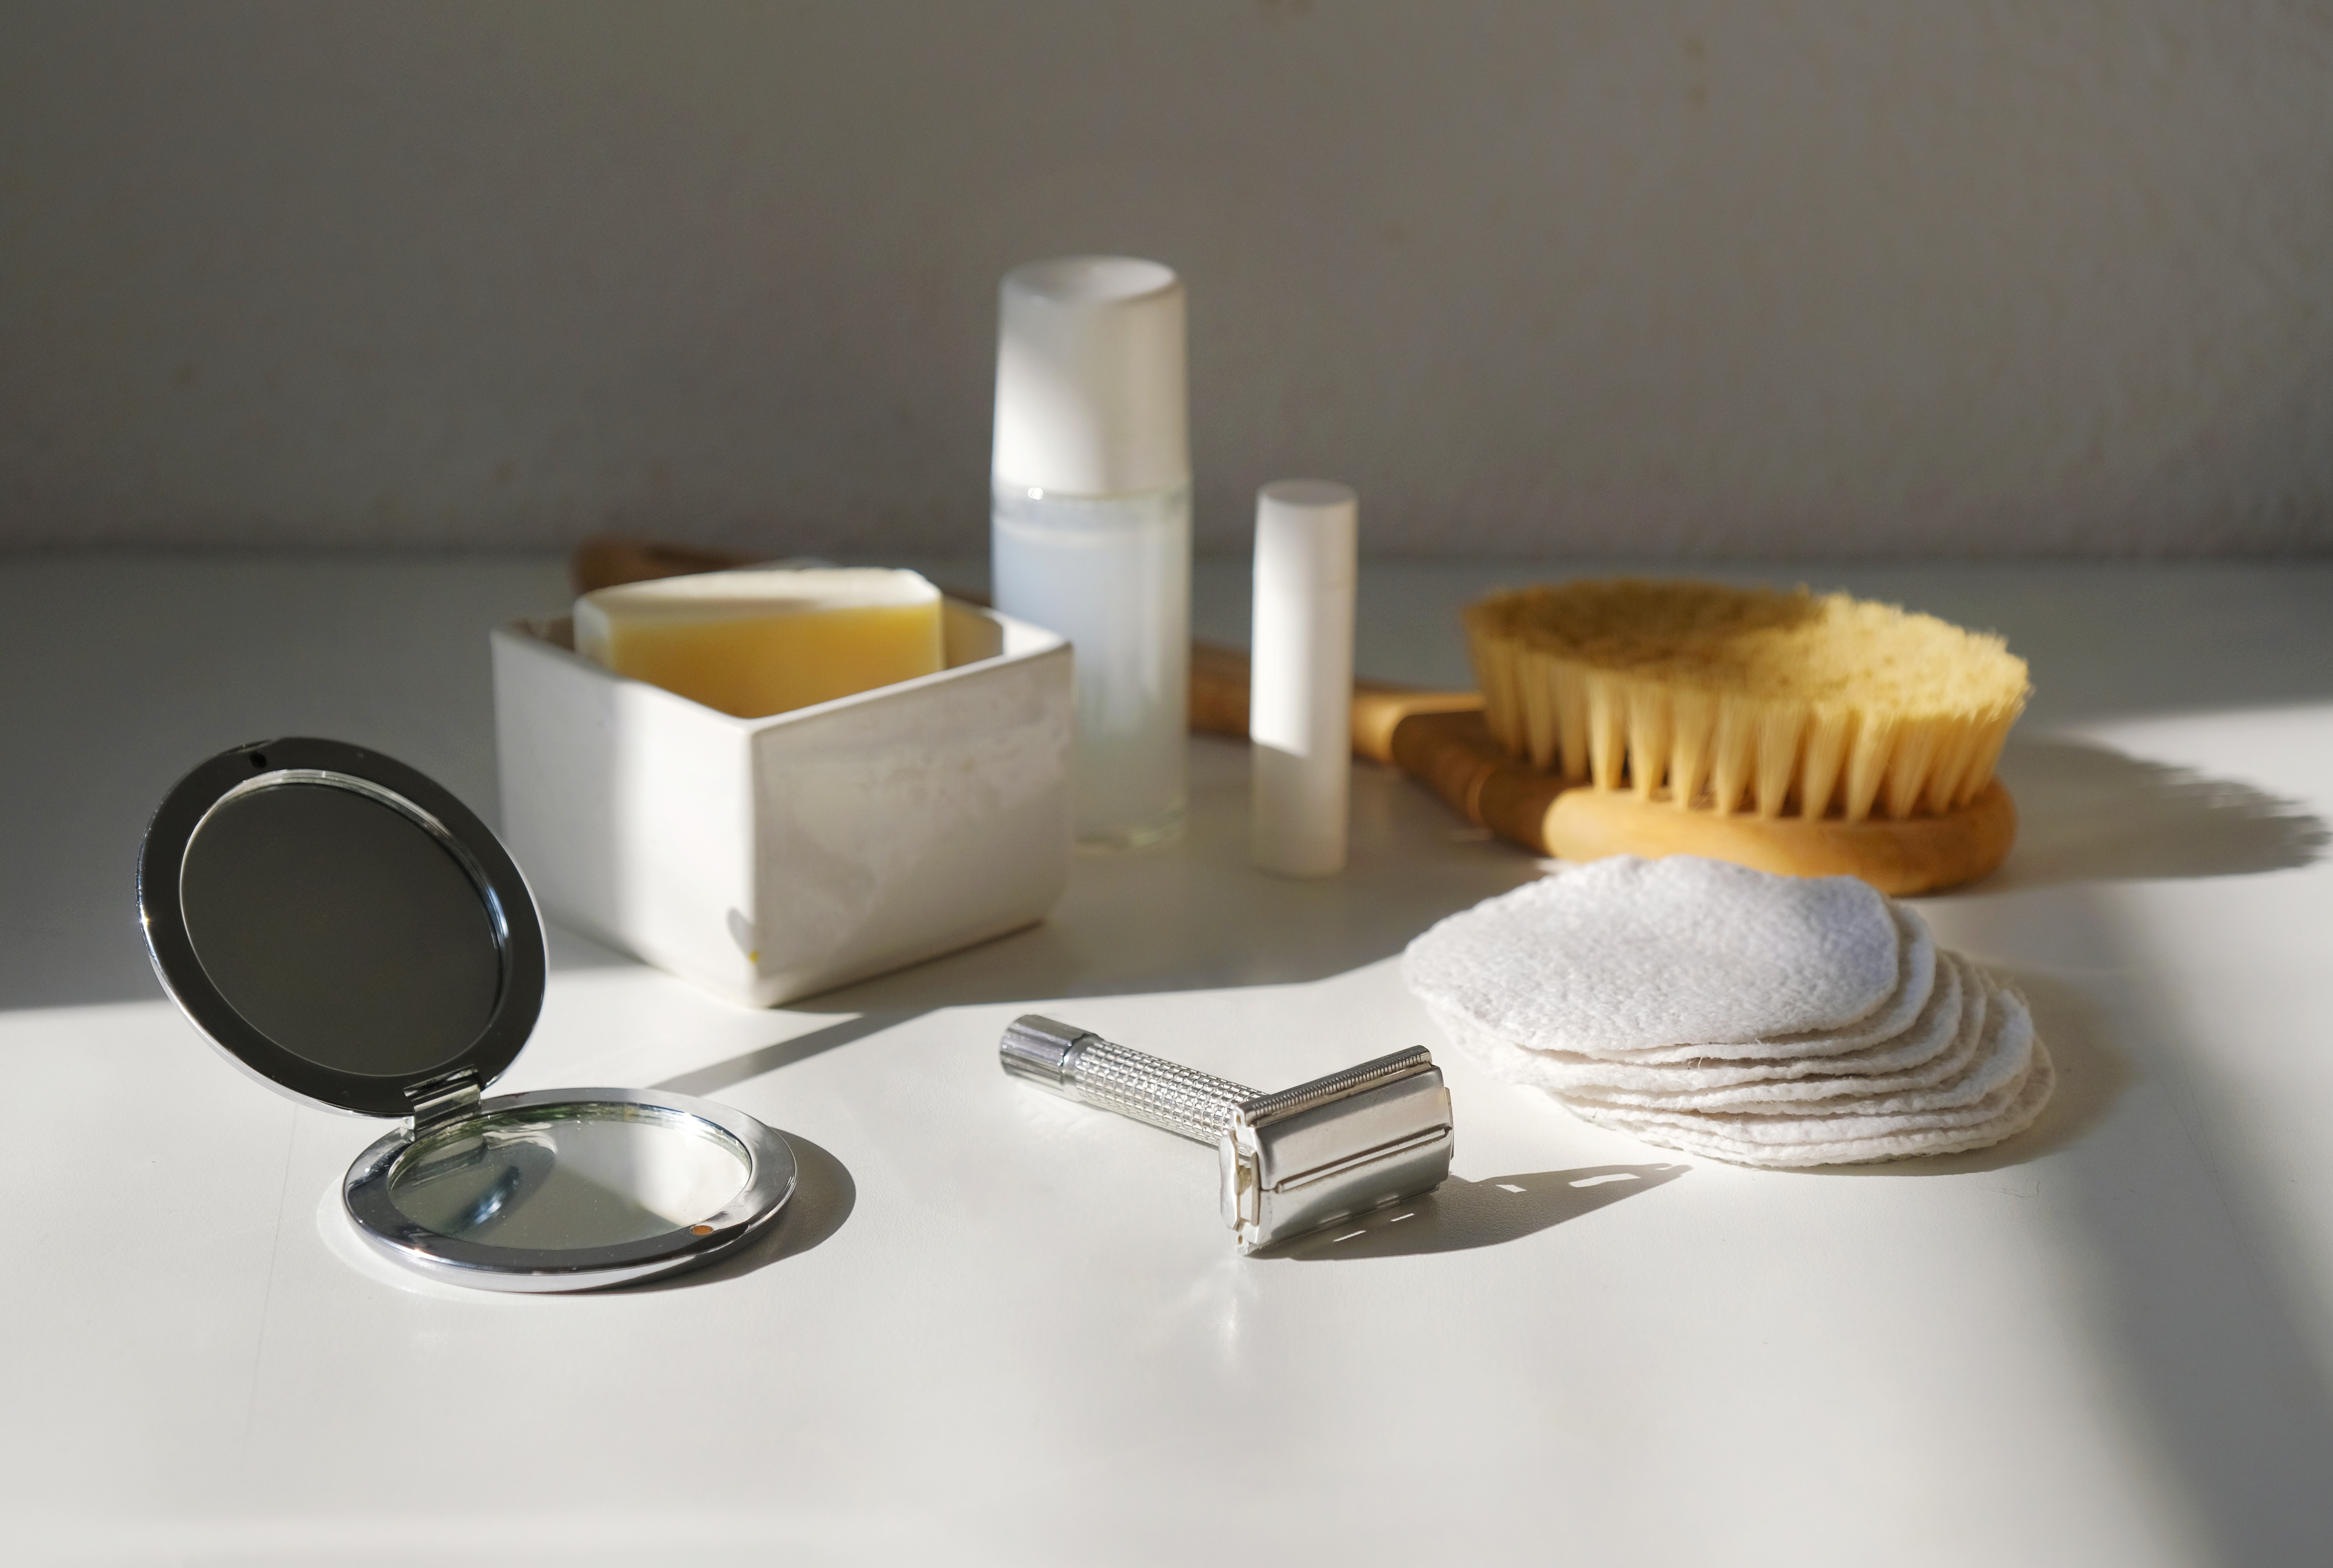 Nachhaltiges Badezimmer –  Alternativen für konventionelle Produkte